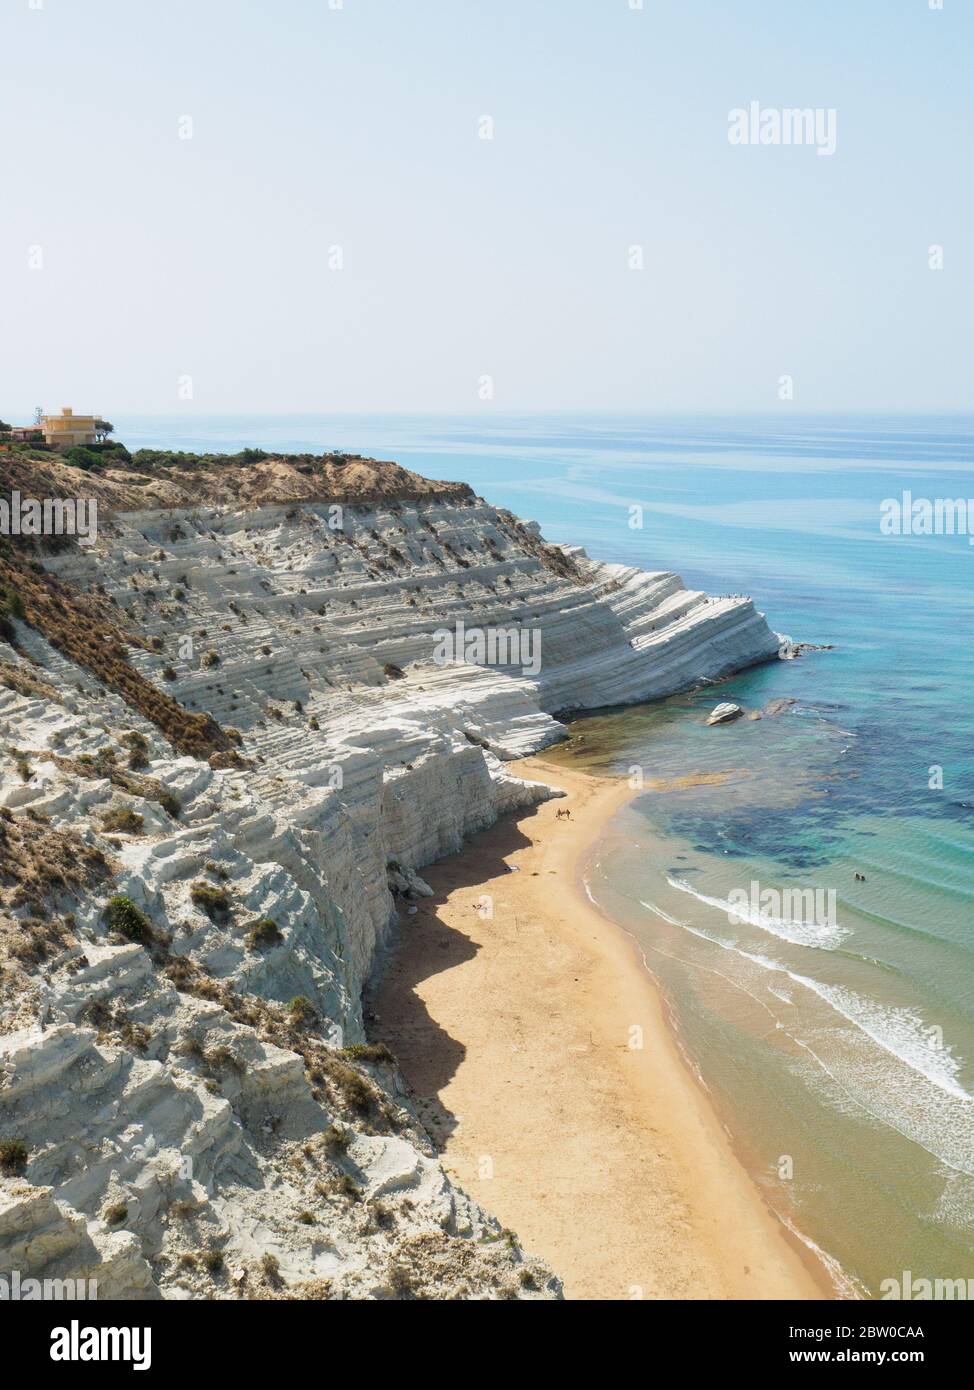 uno sguardo sul paesaggio unico delle bianche scogliere scala dei turchi in sicilia Foto Stock